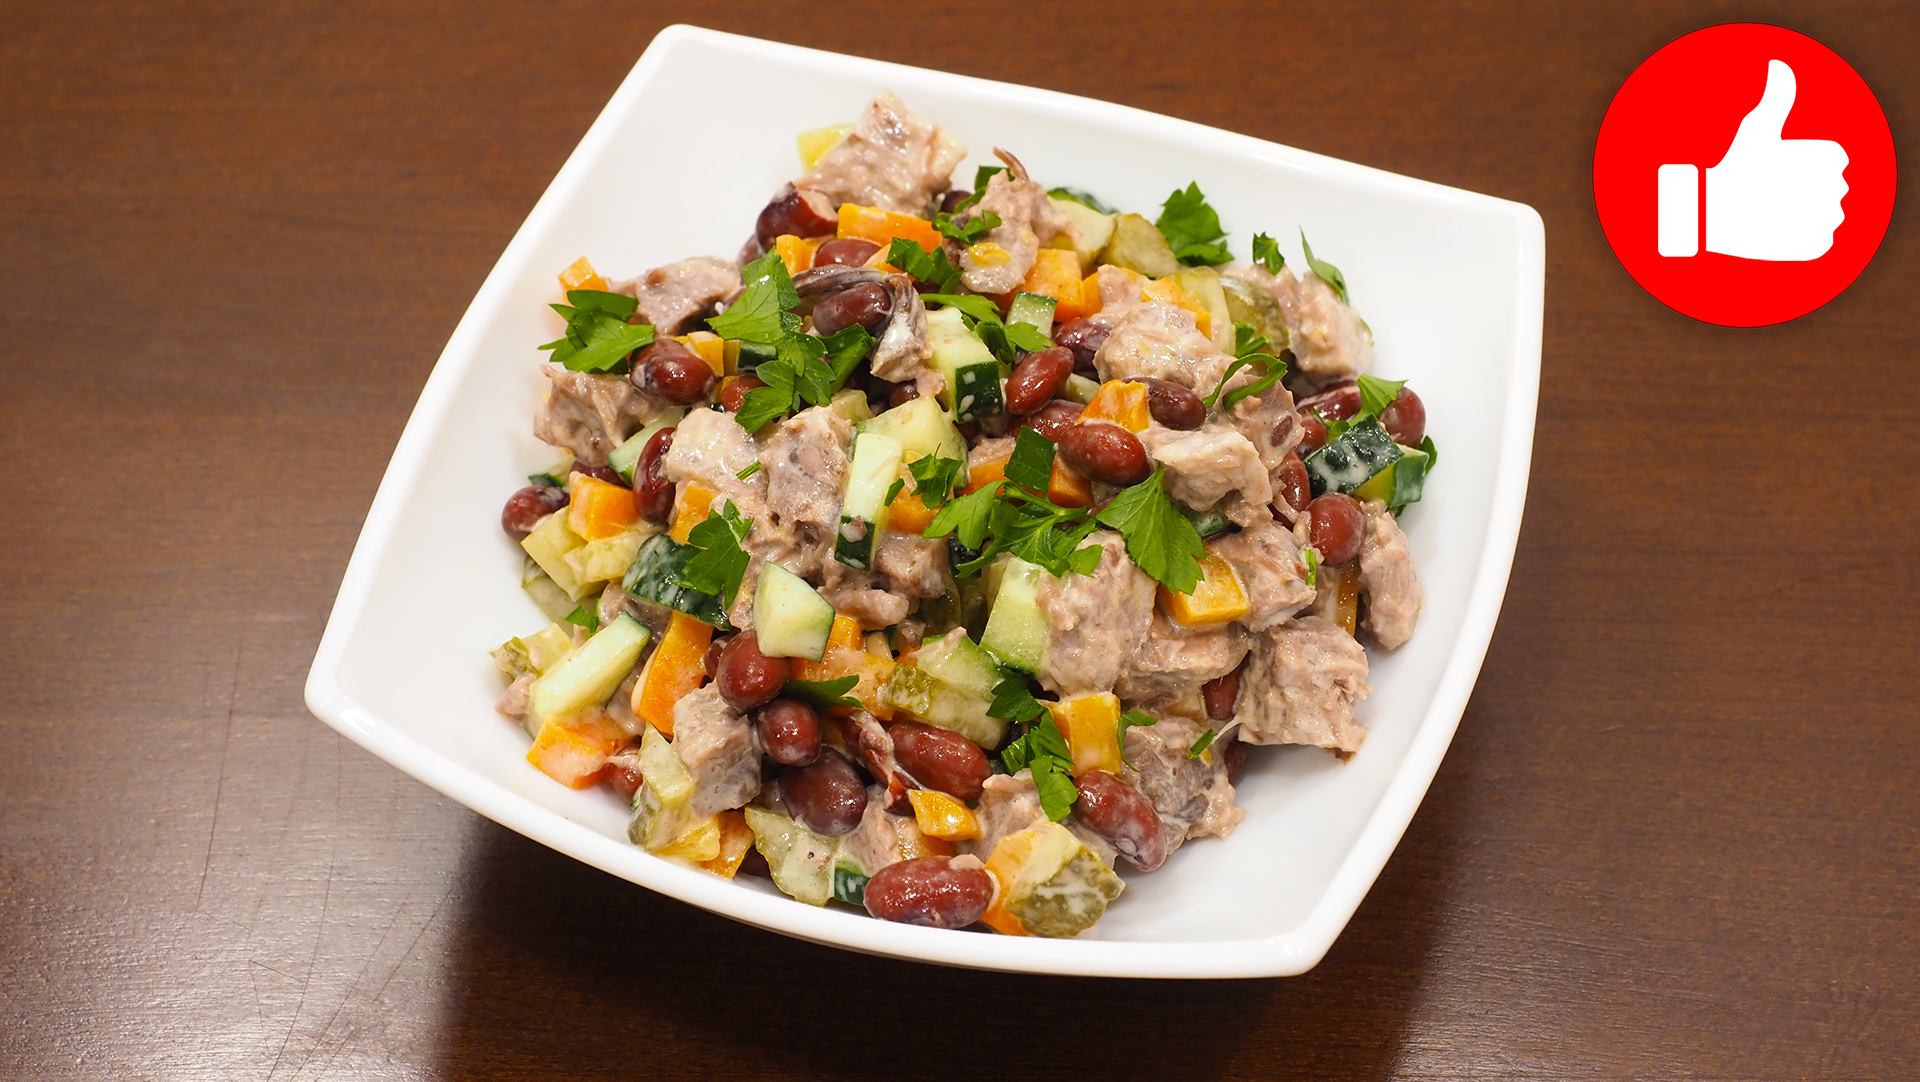 Фото к рецепту: мясной салат с вареной говядиной, овощами и фасолью